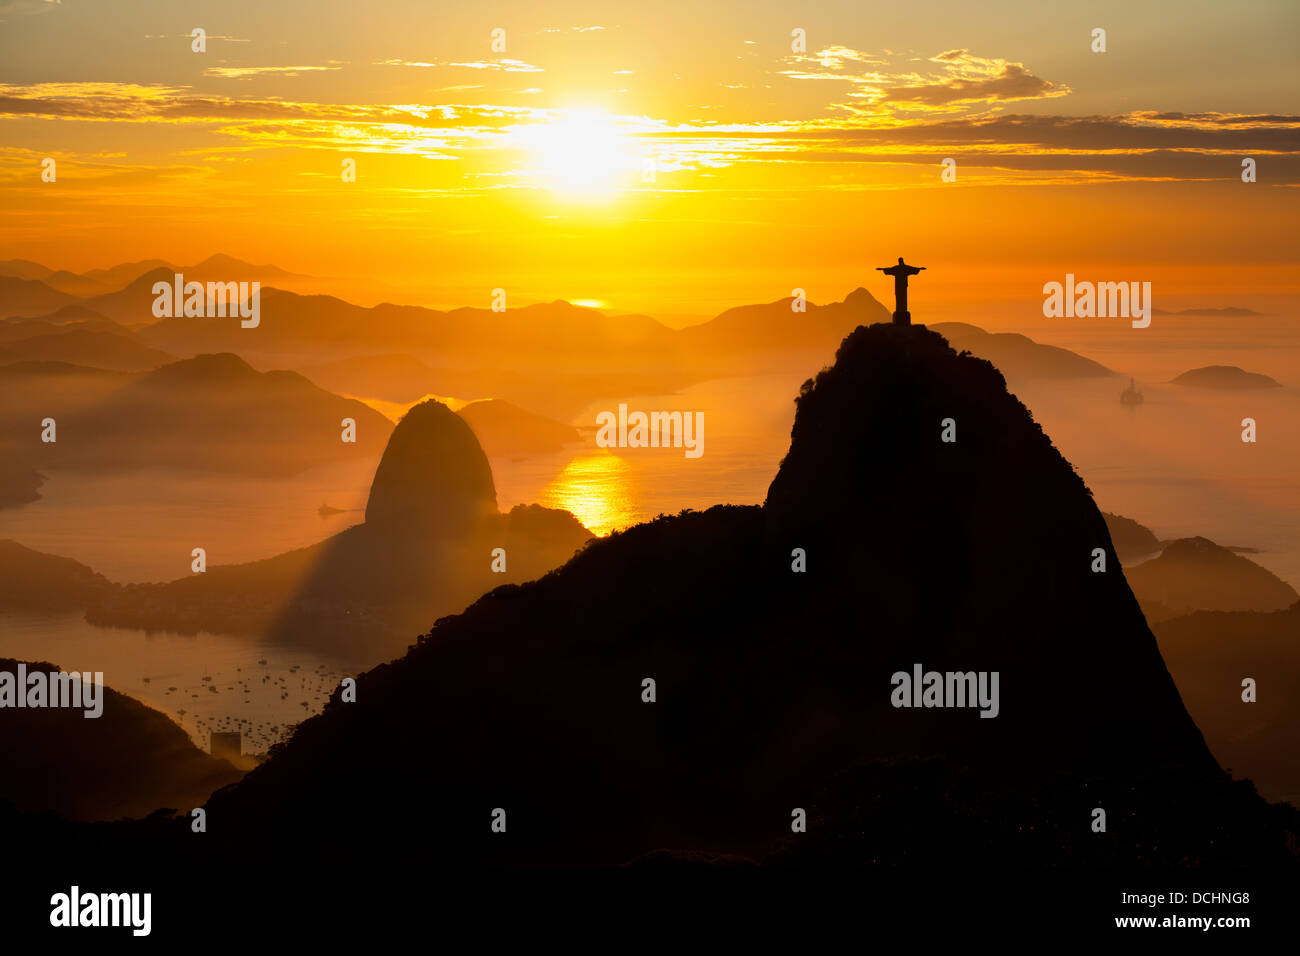 Le Christ Rédempteur et Le Pain de Sucre au lever du soleil, principaux sites touristiques de Rio de Janeiro, Brésil, brume matinale. Banque D'Images